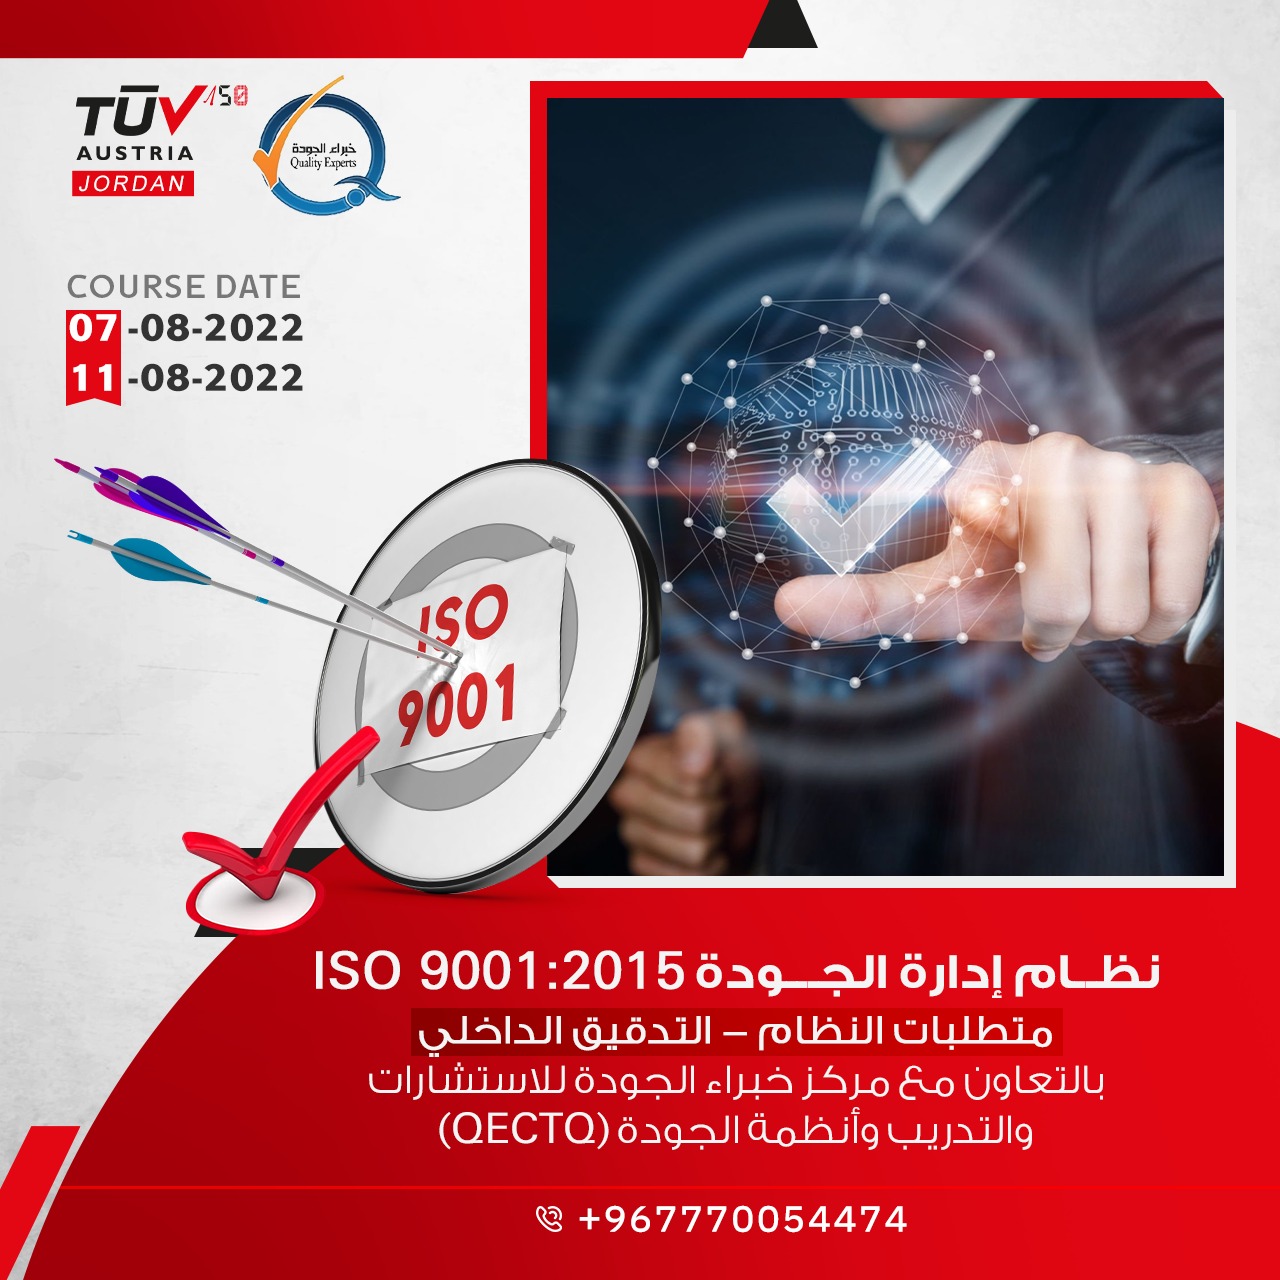  "نظام إدارة الجودة "ISO 9001:2015"   (المتطلبات– التدقيق الداخلي)